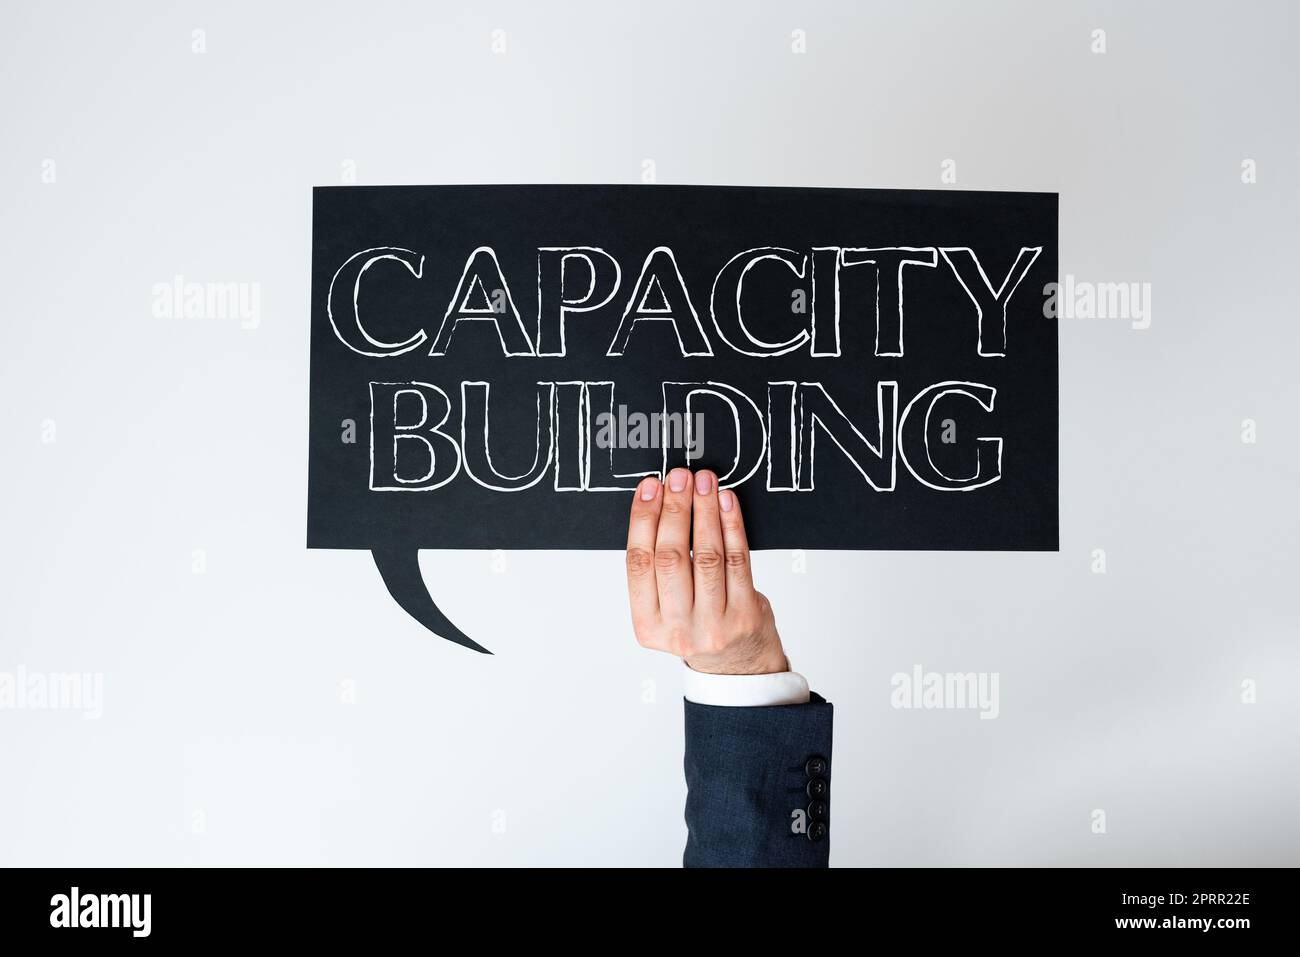 Textüberschrift zur Darstellung von Capacity BuildStrengthen the abilities of Individuals Workforce Planning. Geschäftsidee stärkt die Fähigkeiten des Einzelnen Personalplanung Stockfoto